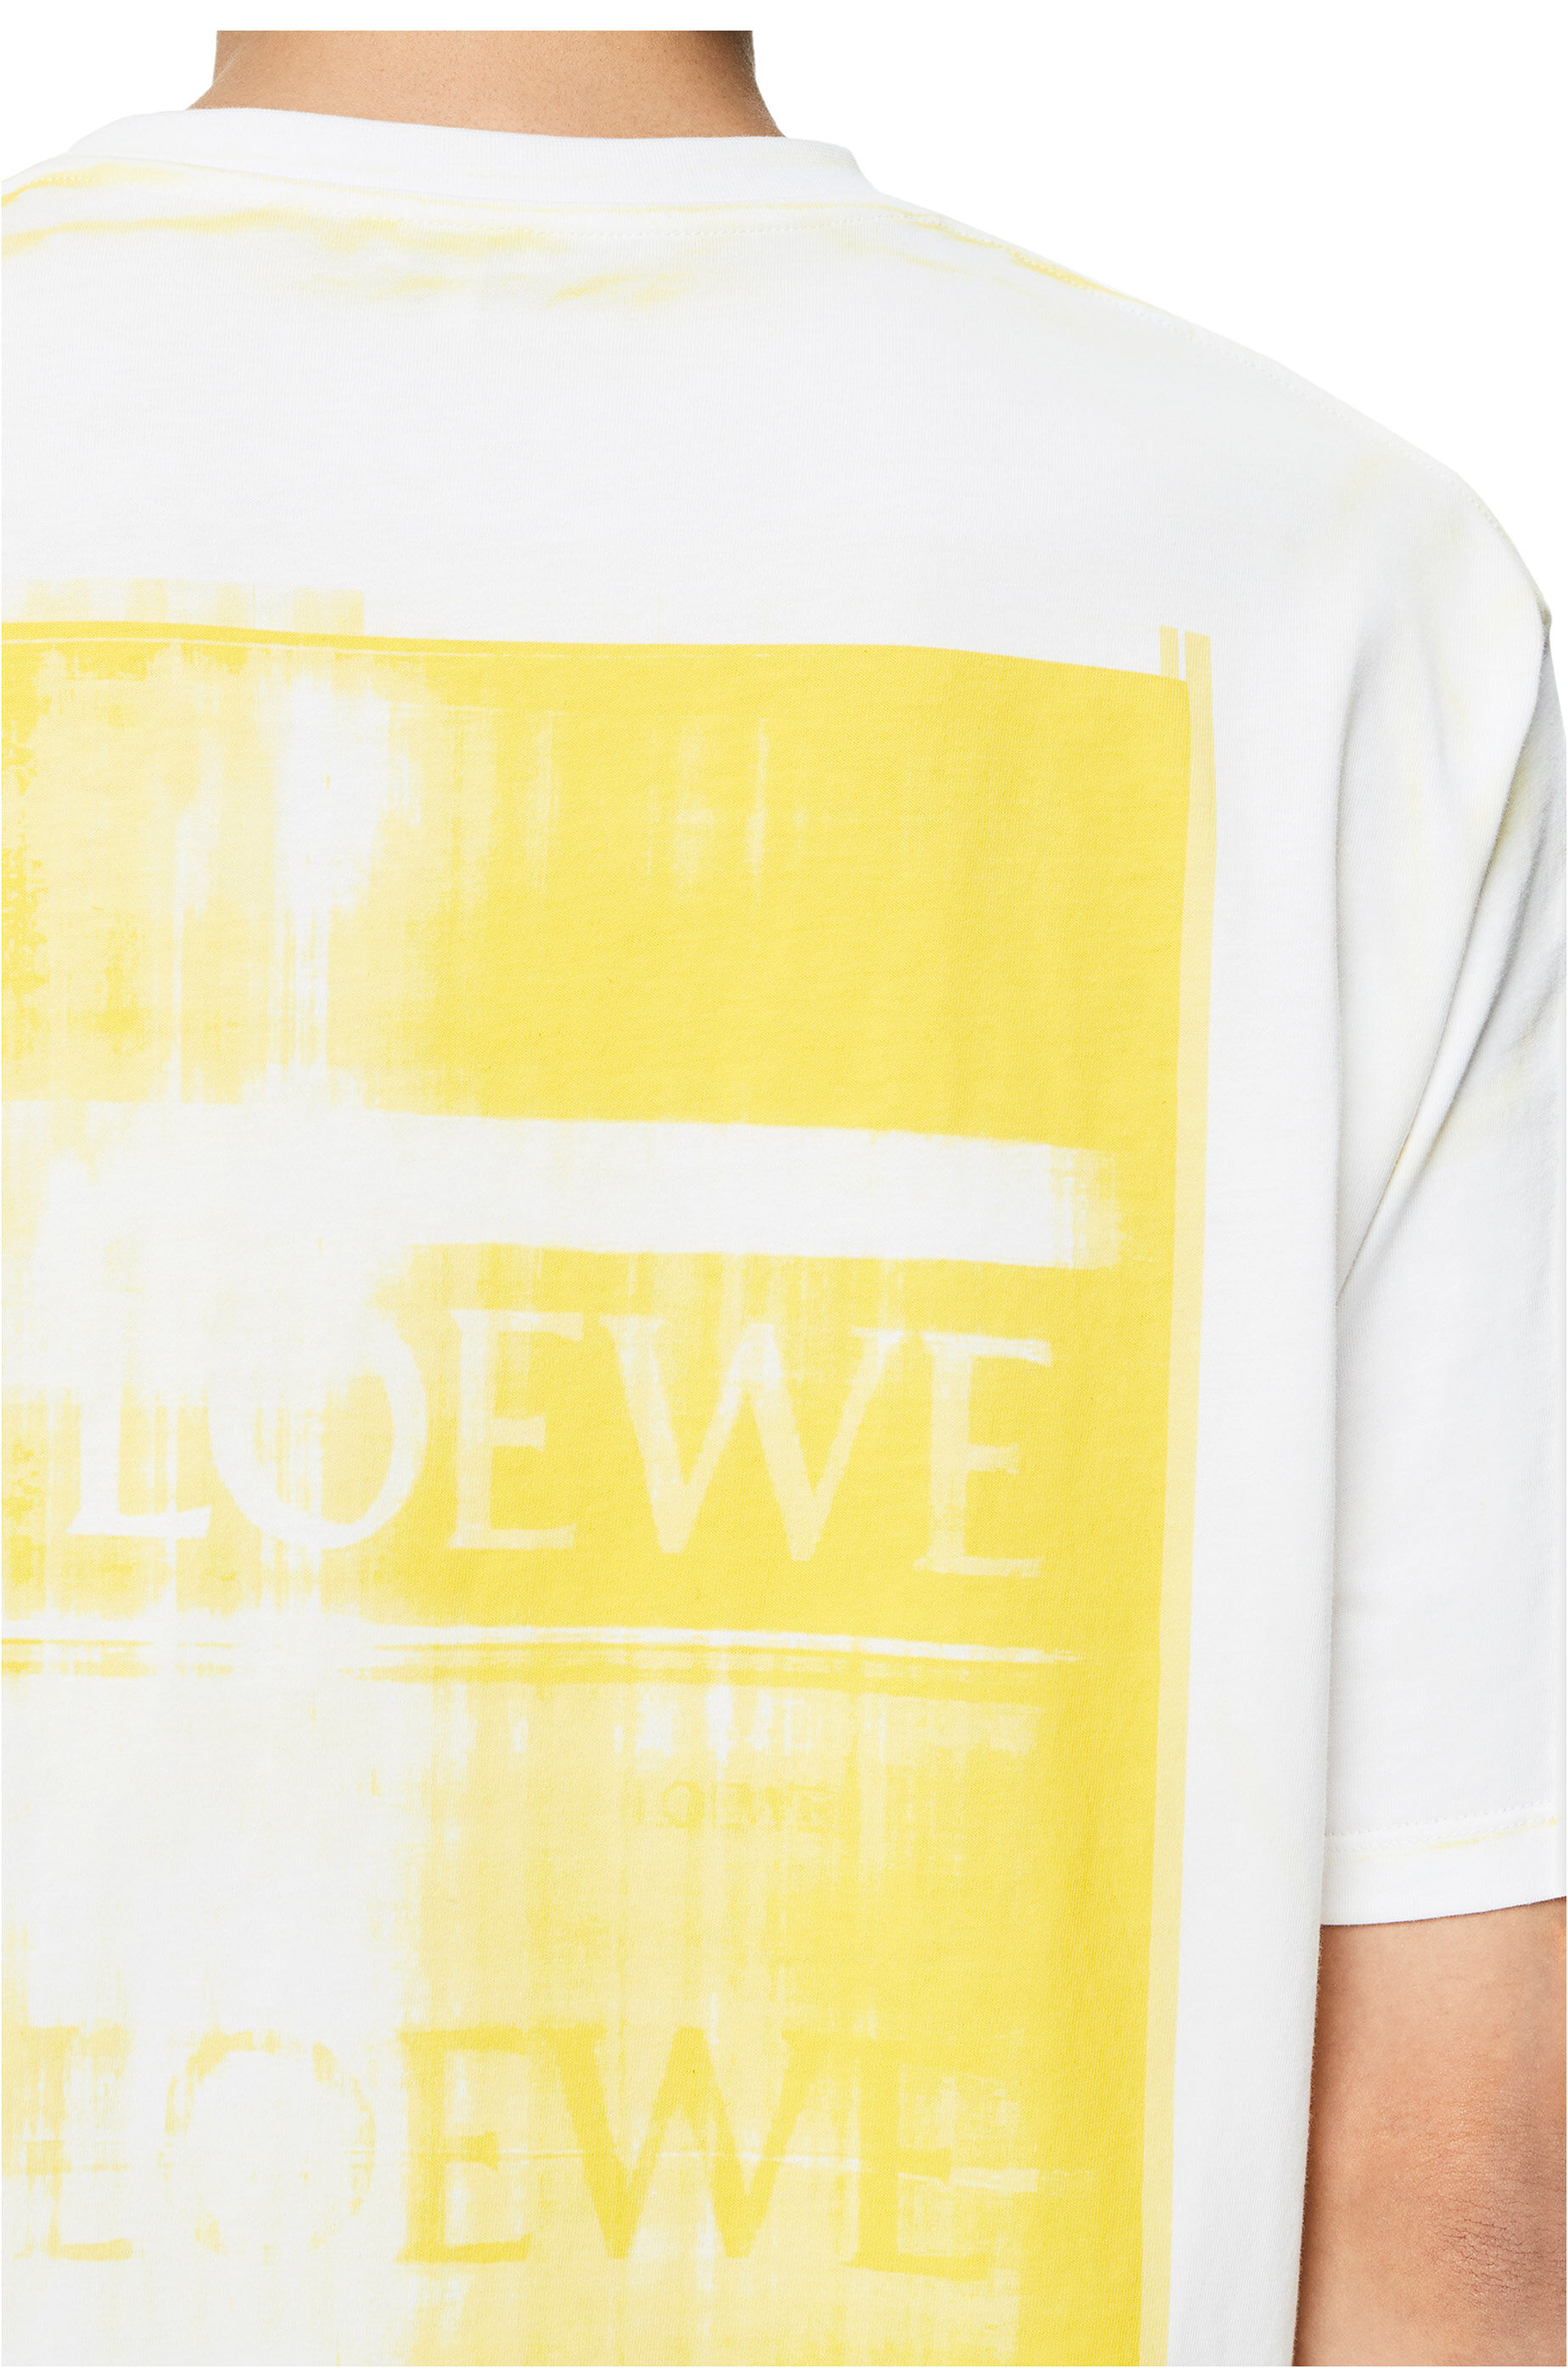 新品正規品 LOEWE アナグラム フォトコピー スウェットシャツ 特別価格